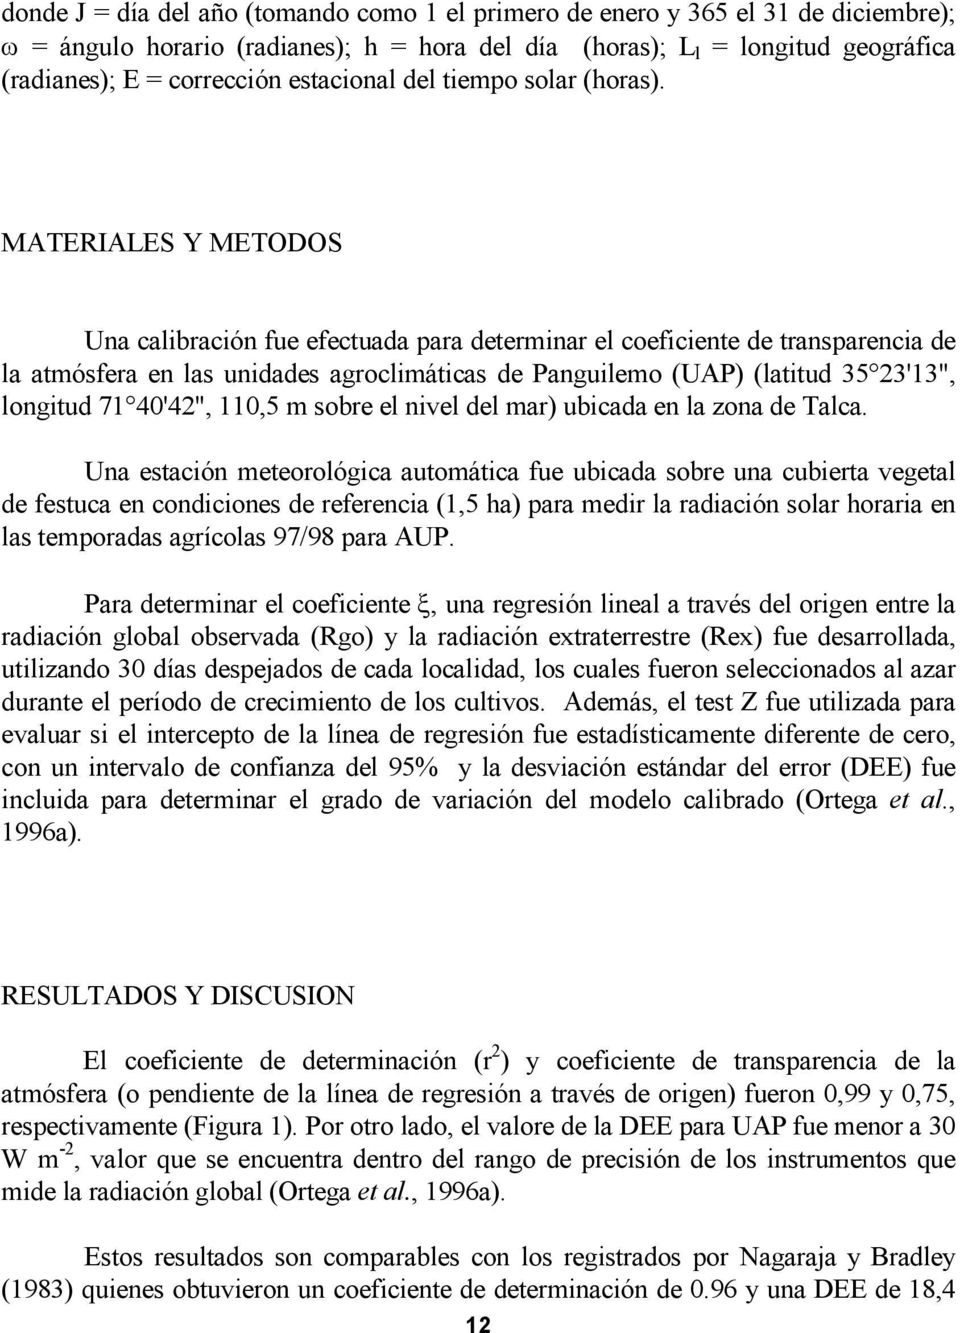 MATERIALES Y METODOS Una calibración fue efectuada para determinar el coeficiente de transparencia de la atmósfera en las unidades agroclimáticas de Panguilemo (UAP) (latitud 35 23'13", longitud 71